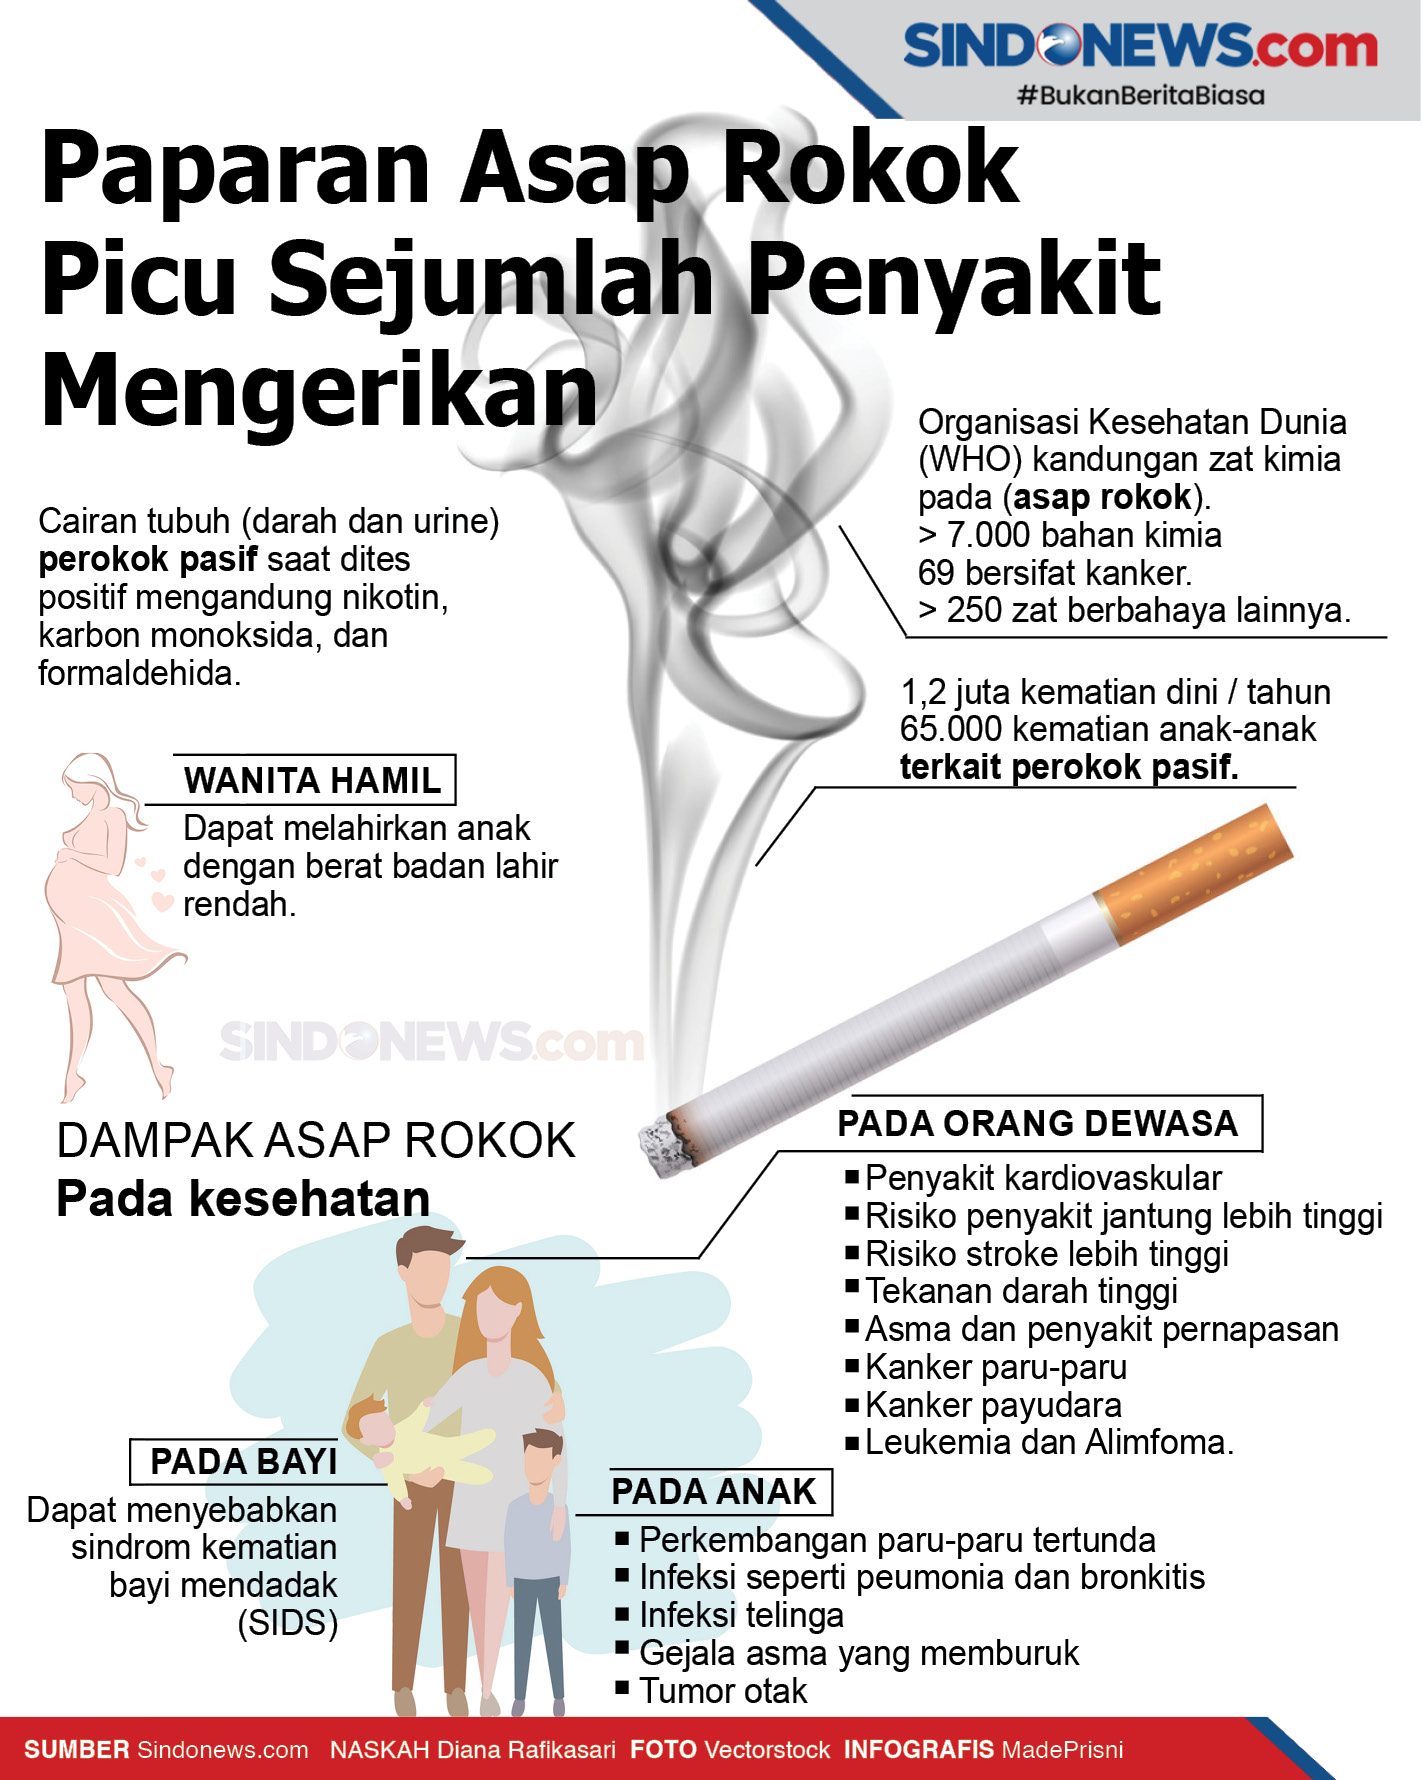 Asap rokok mengandung racun berbahaya asap rokok berasal dari